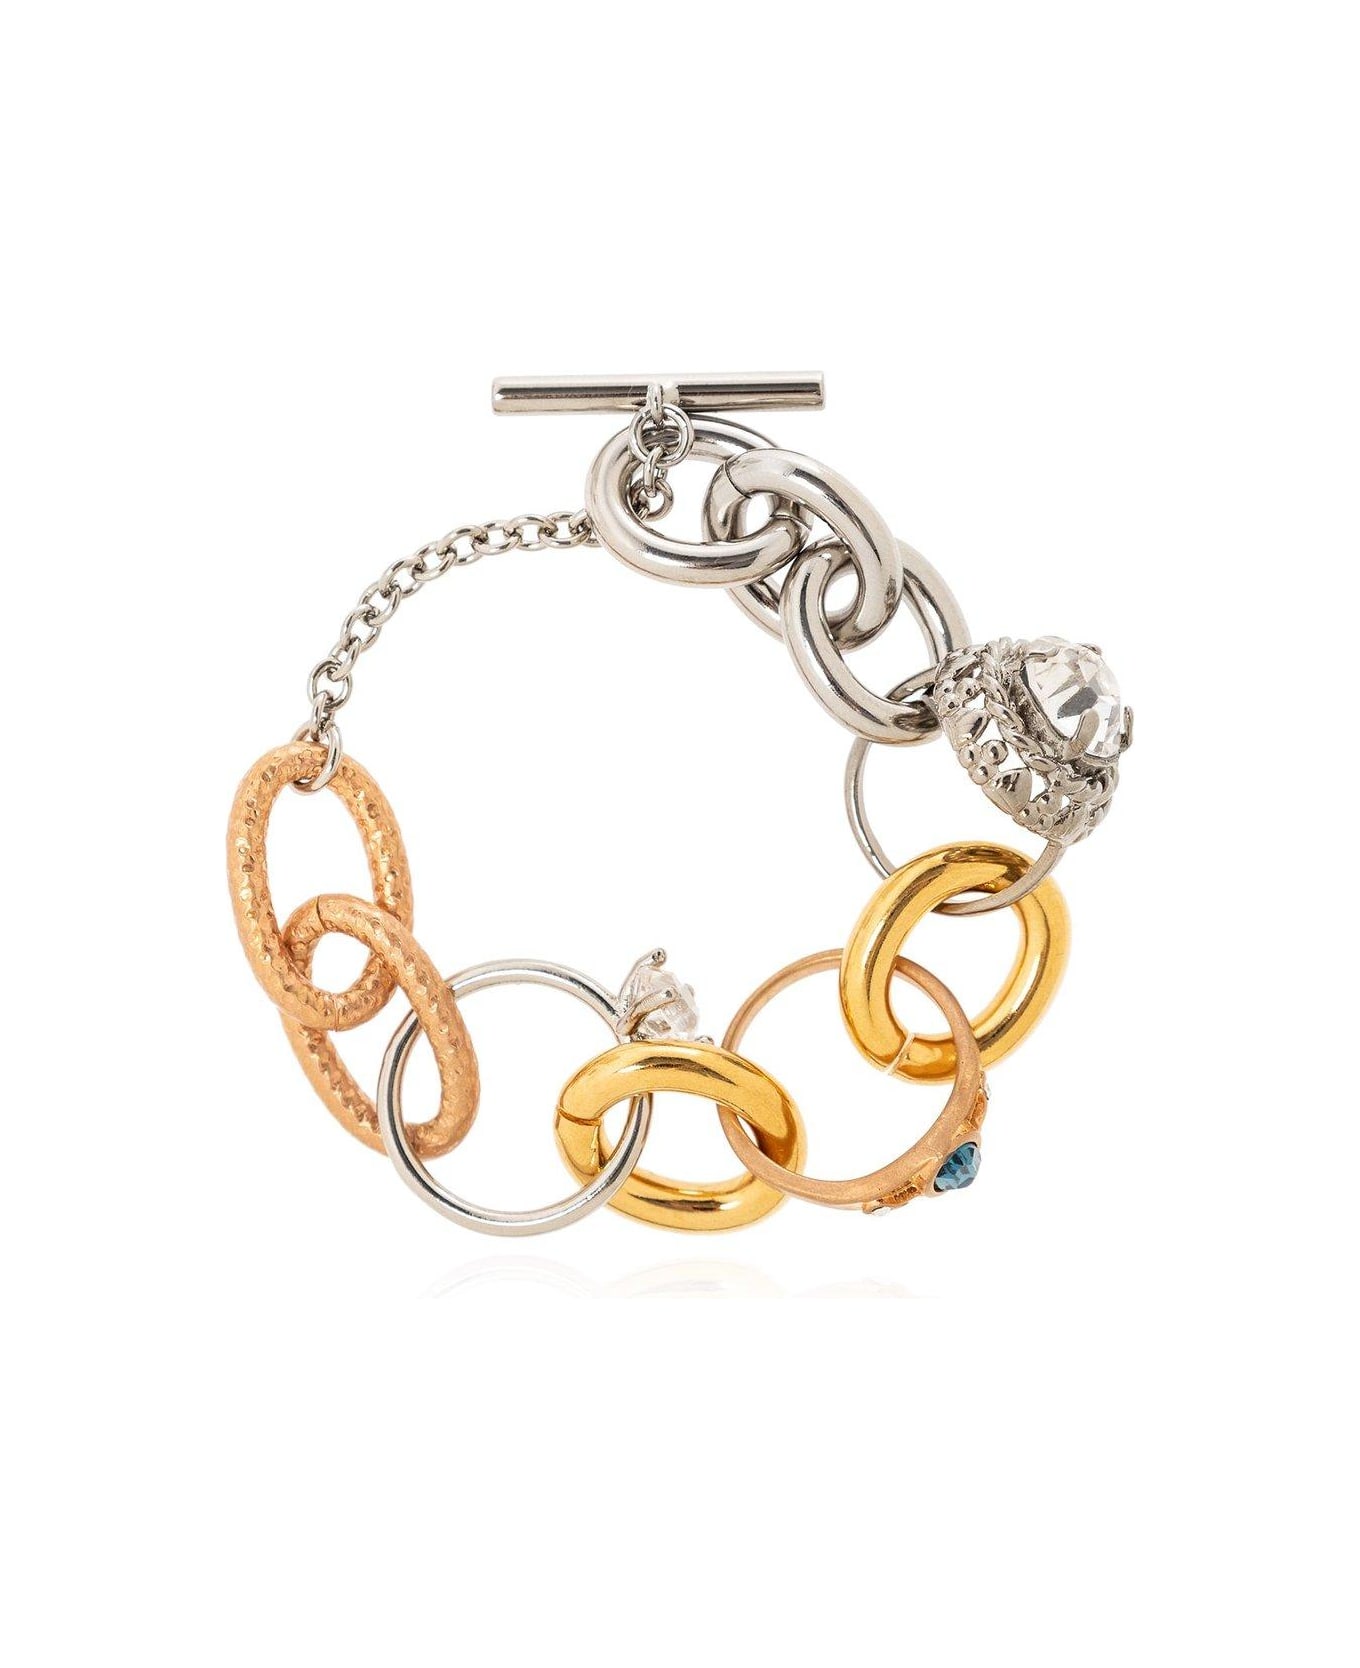 Marni Two-toned Ring Charm Bracelet - Golden